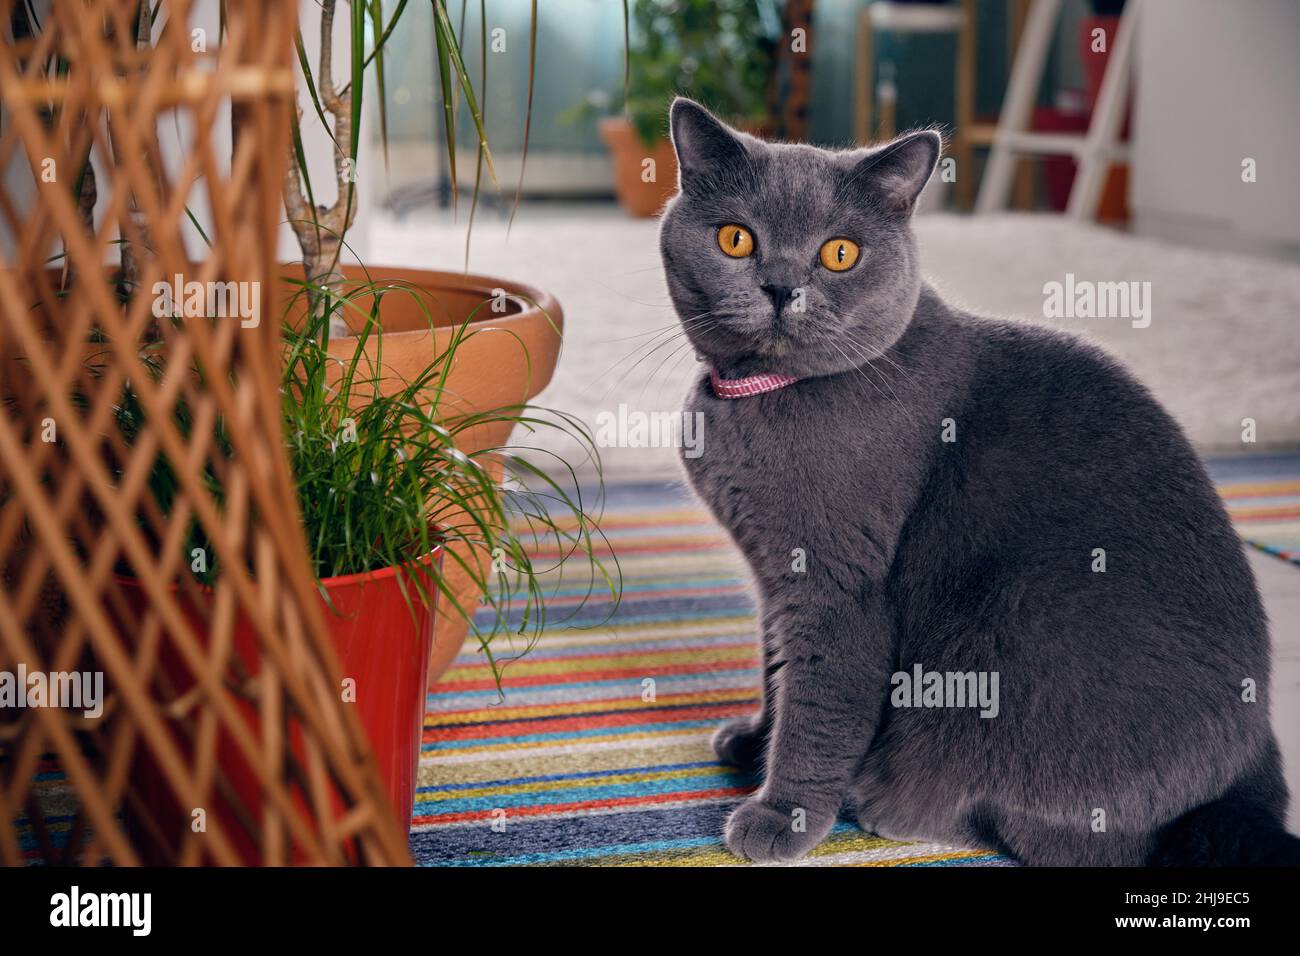 Eine wunderschöne britische Kurzhaar-Katze sitzt auf einem bunten Teppich und schaut auf die Kamera Stockfoto